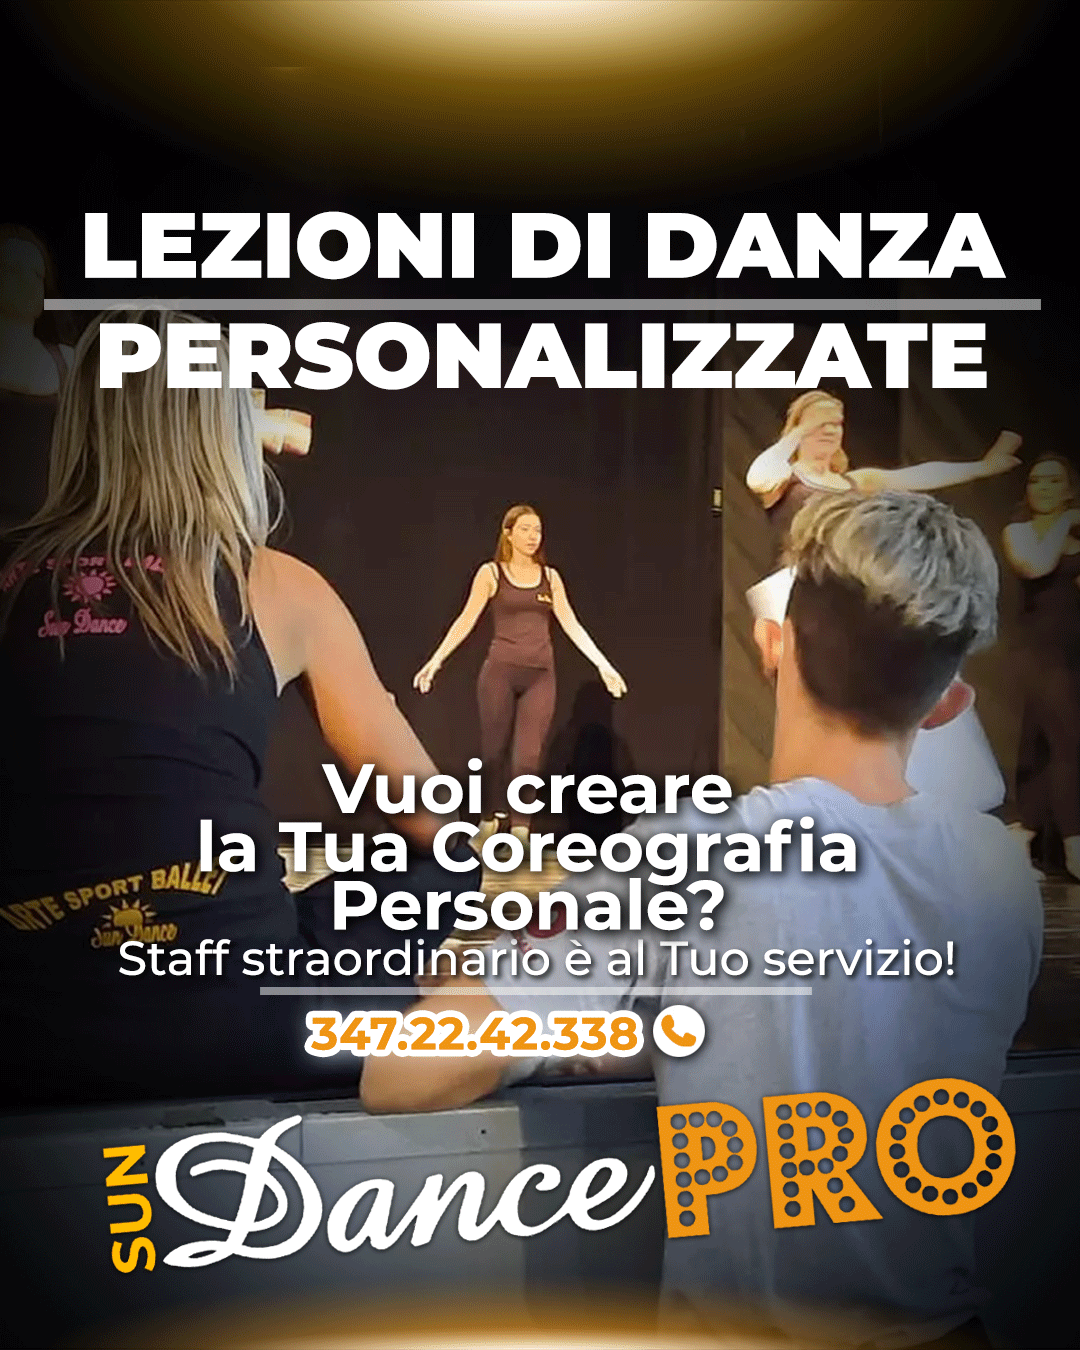 Progetto Professionale  di Danza individuale denominato sunDancePRO alla Scuola di Danza Sun Dance di Torino - Vuoi creare la tua Coreografia personale?